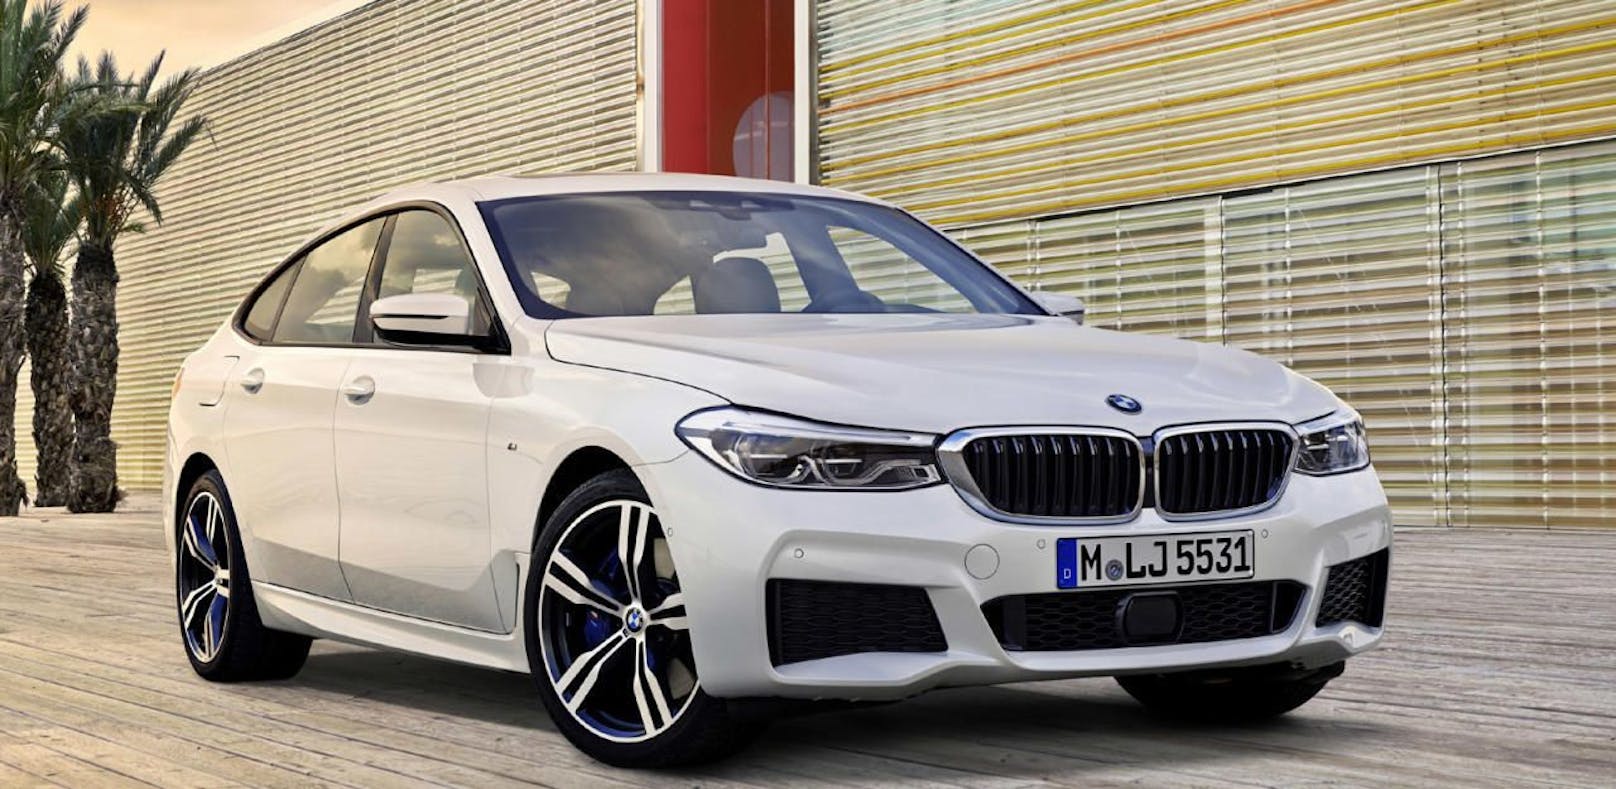 Der neue BMW 6er Gran Turismo kommt im Herbst